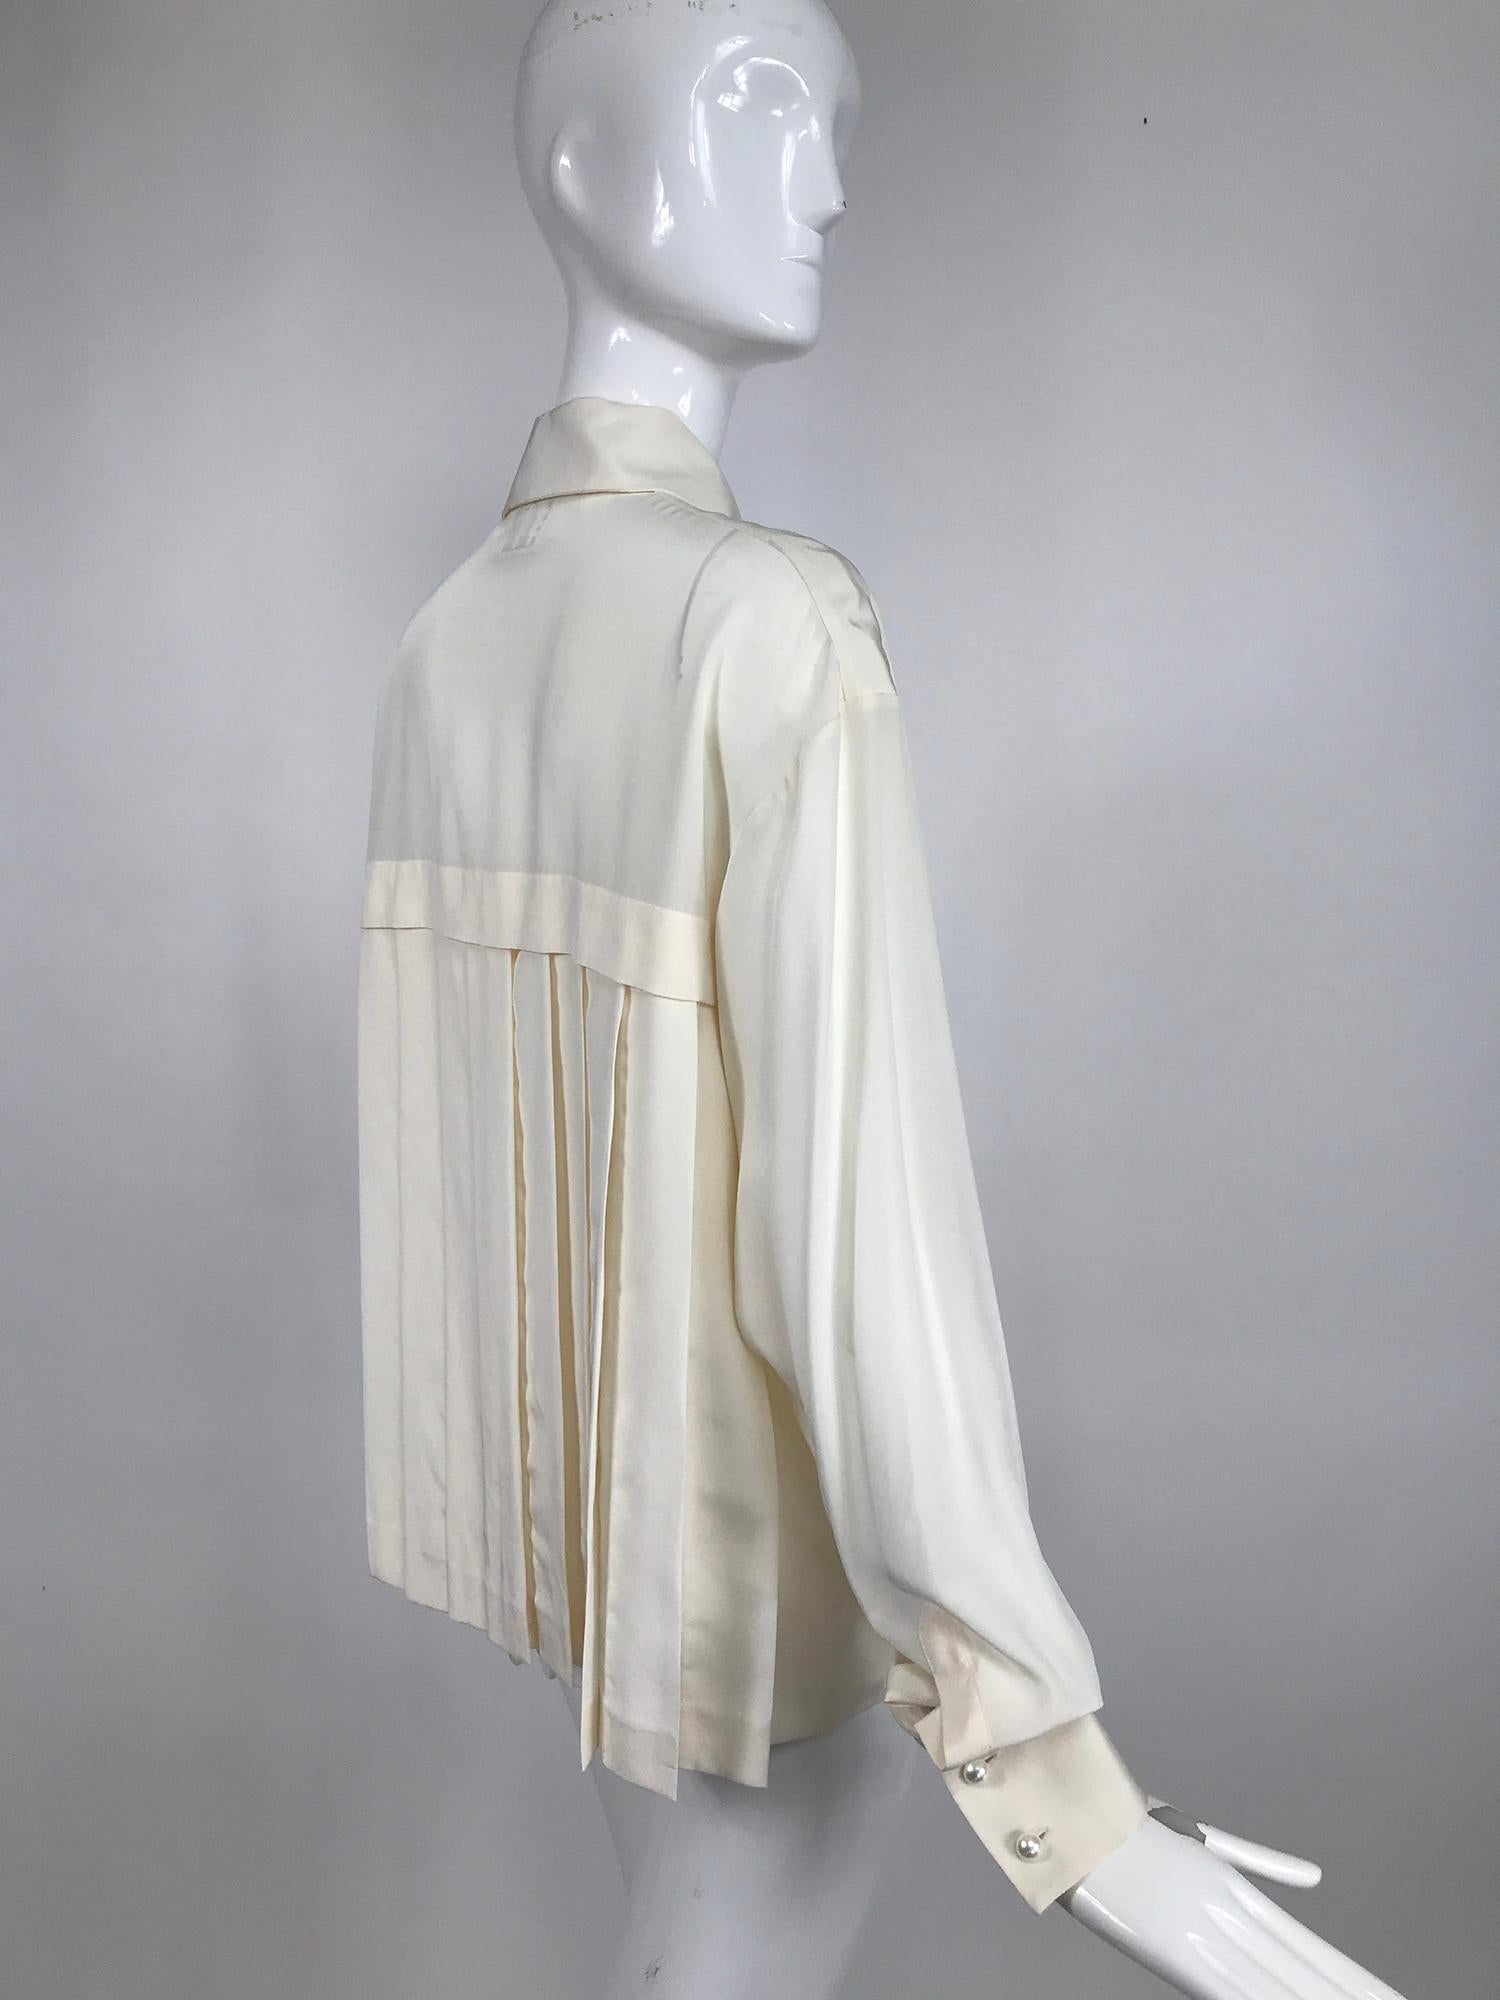 chanel white blouse